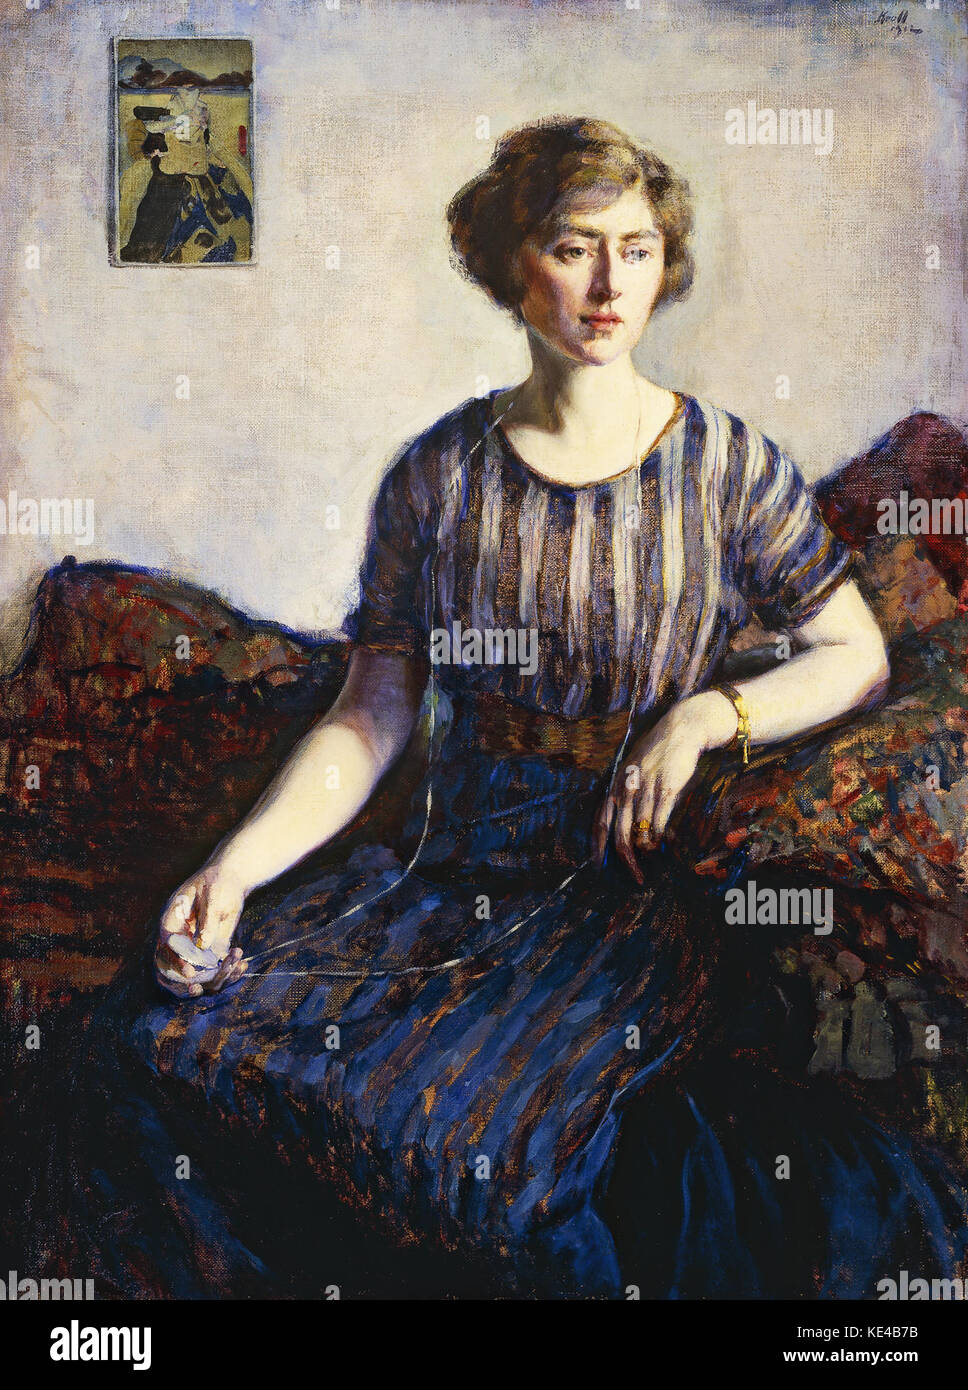 Leon Kroll Kroll Tess Pergament, la soeur de l'artiste, 1912 Banque D'Images